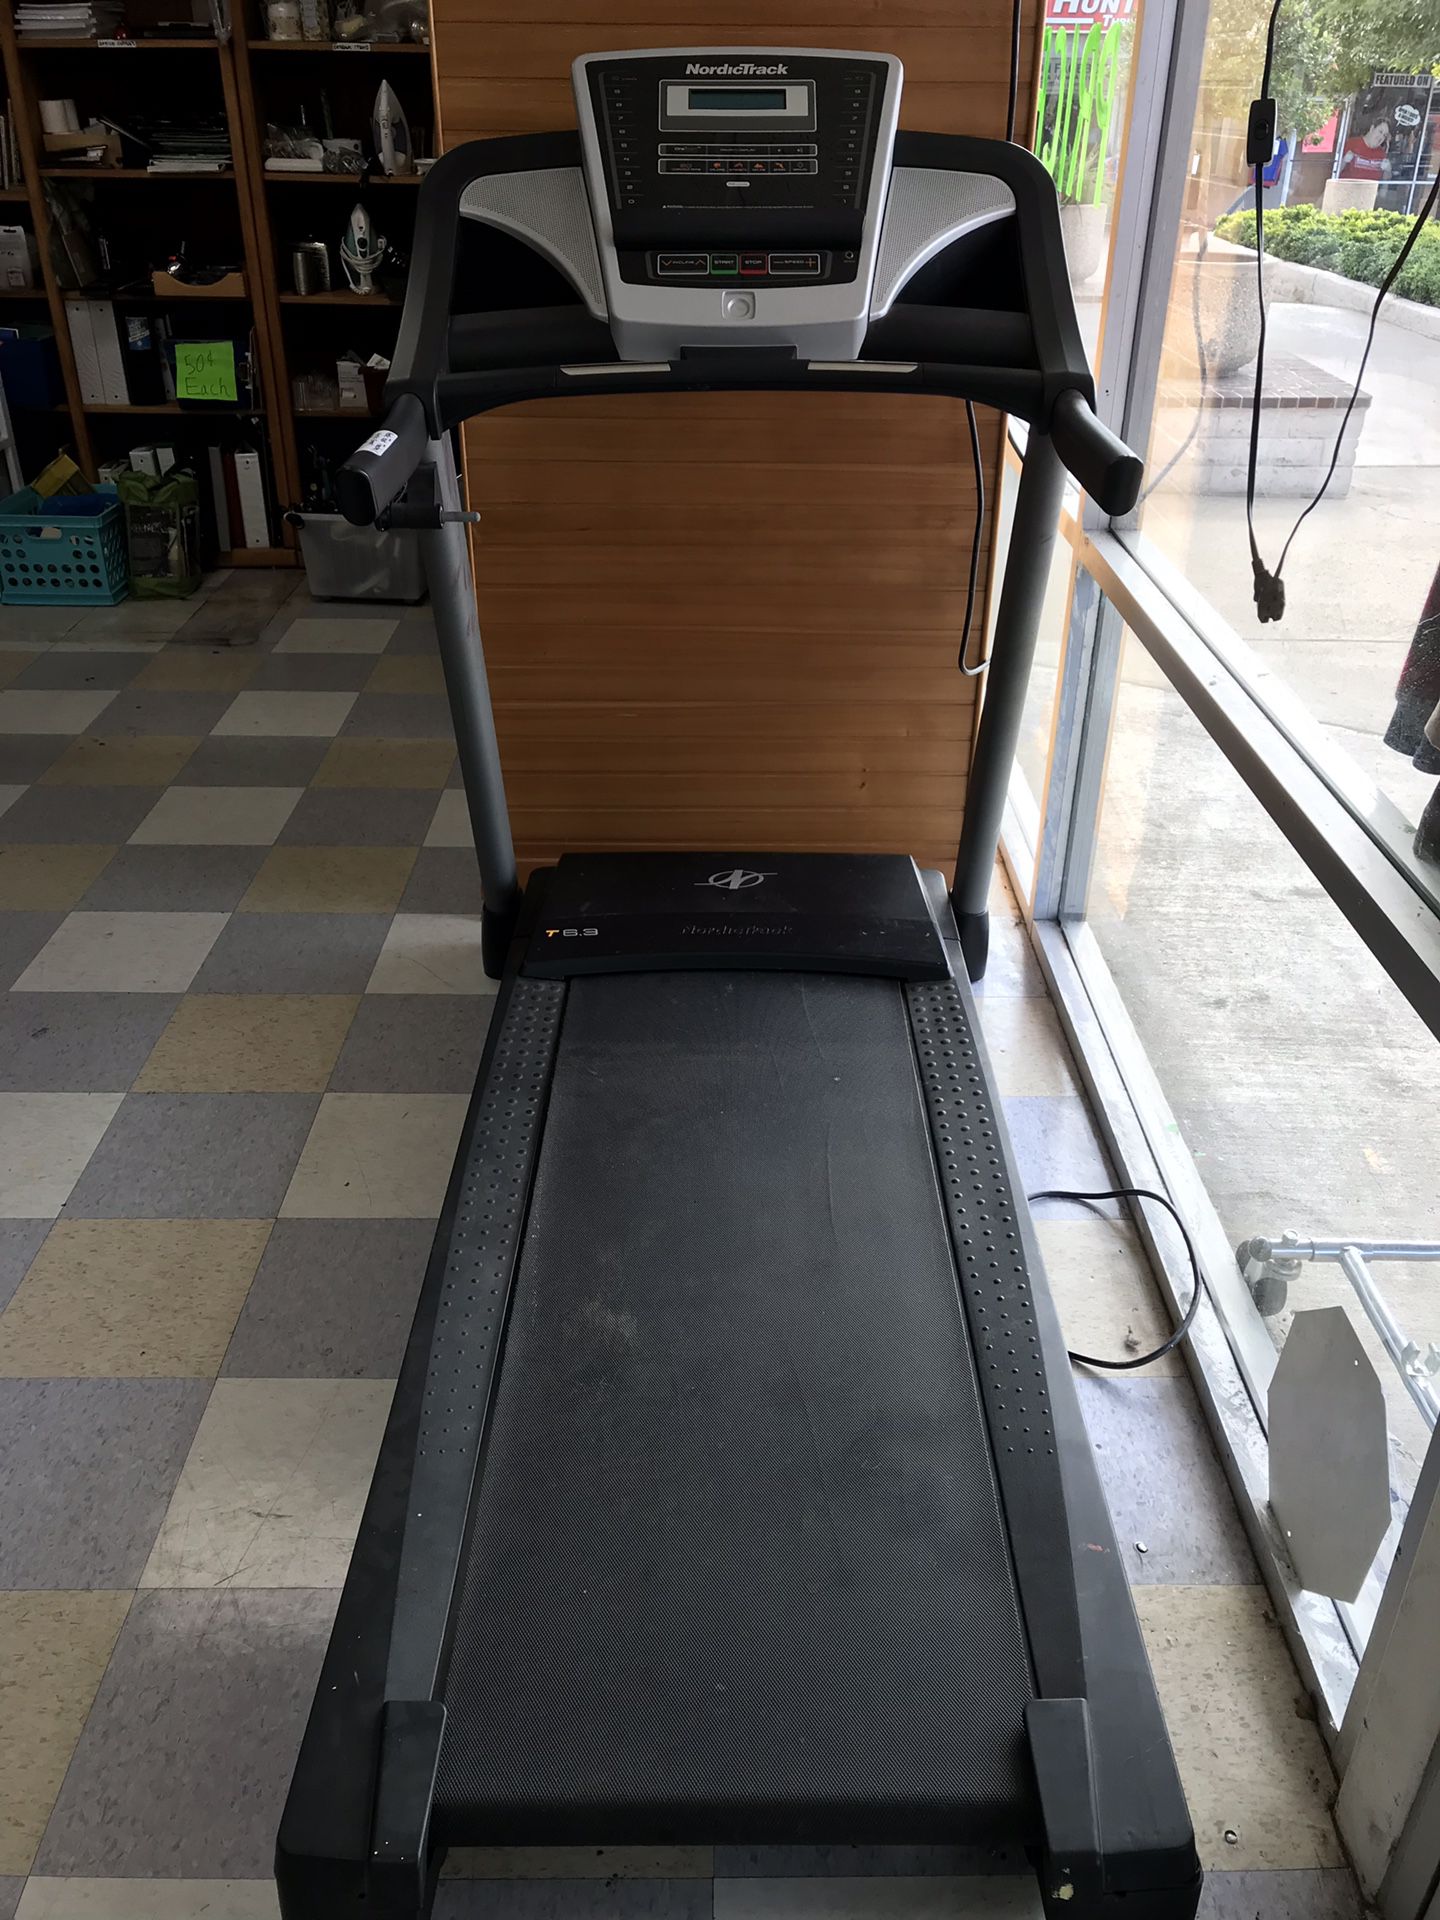 NirdicTrack T6.3 Treadmill